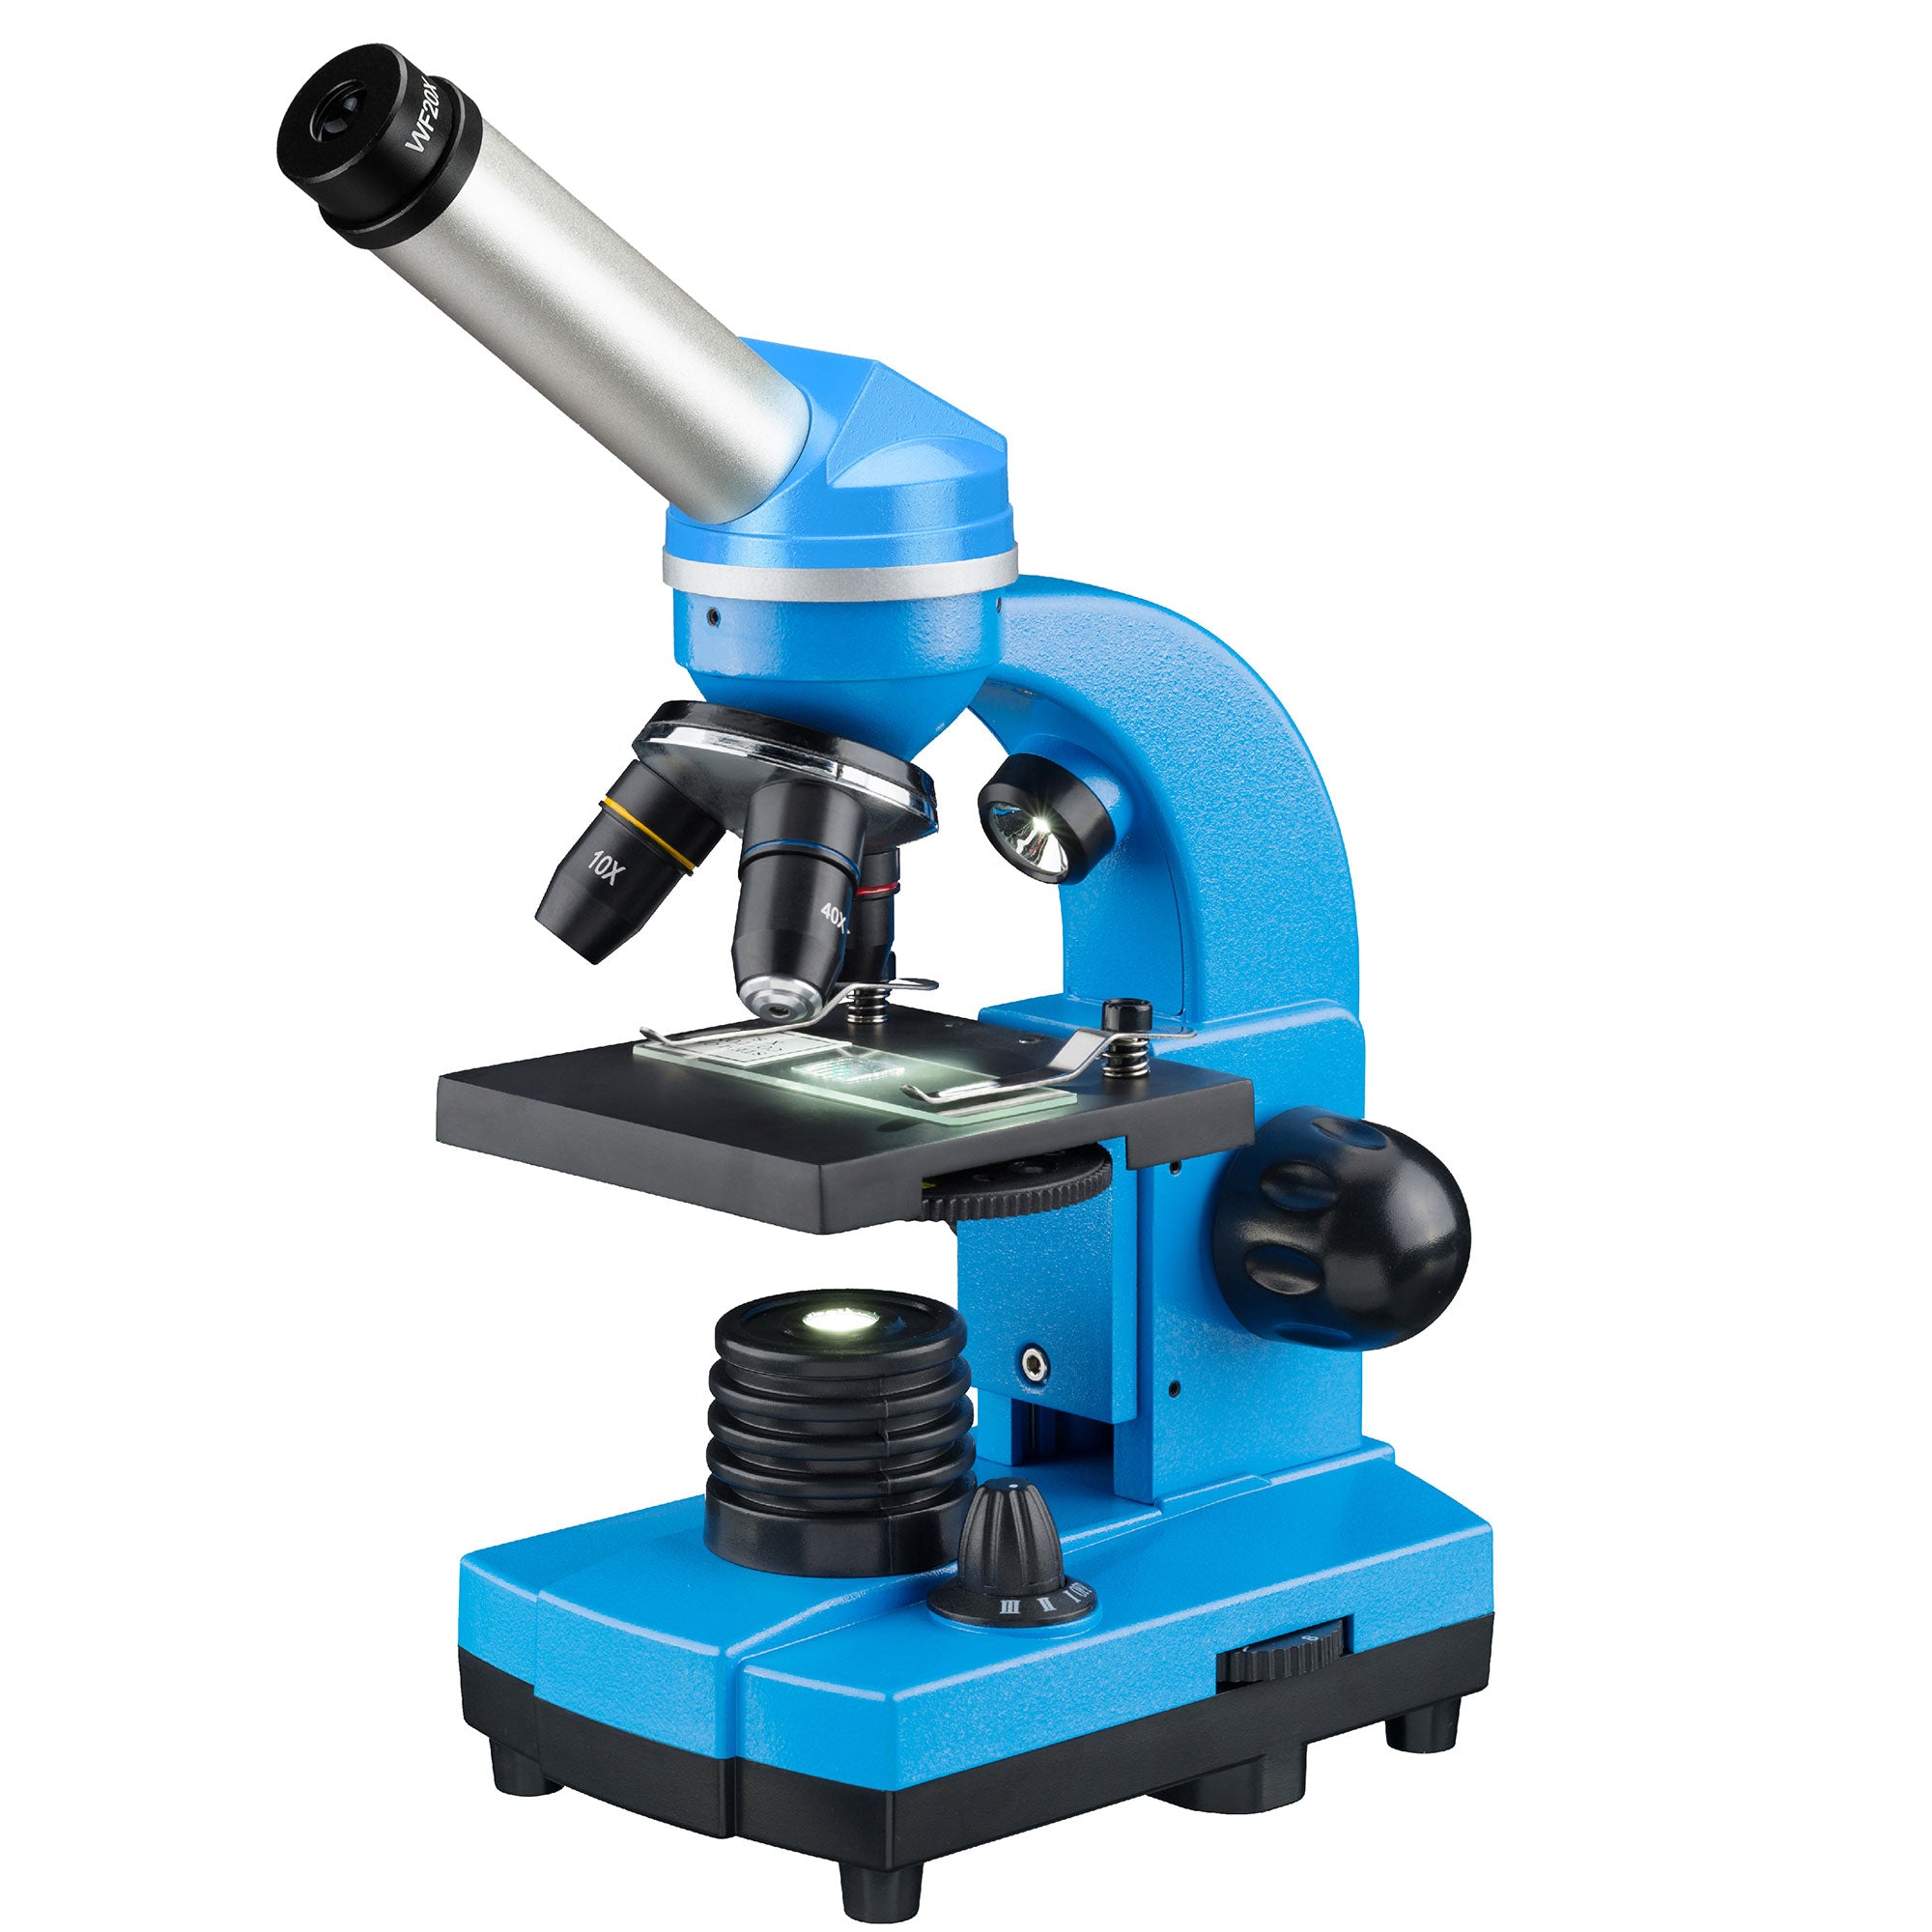 3304 Enfants Microscope Kit 1200X Magnification Des Sciences Pour Enfants -TVC-Mall.com